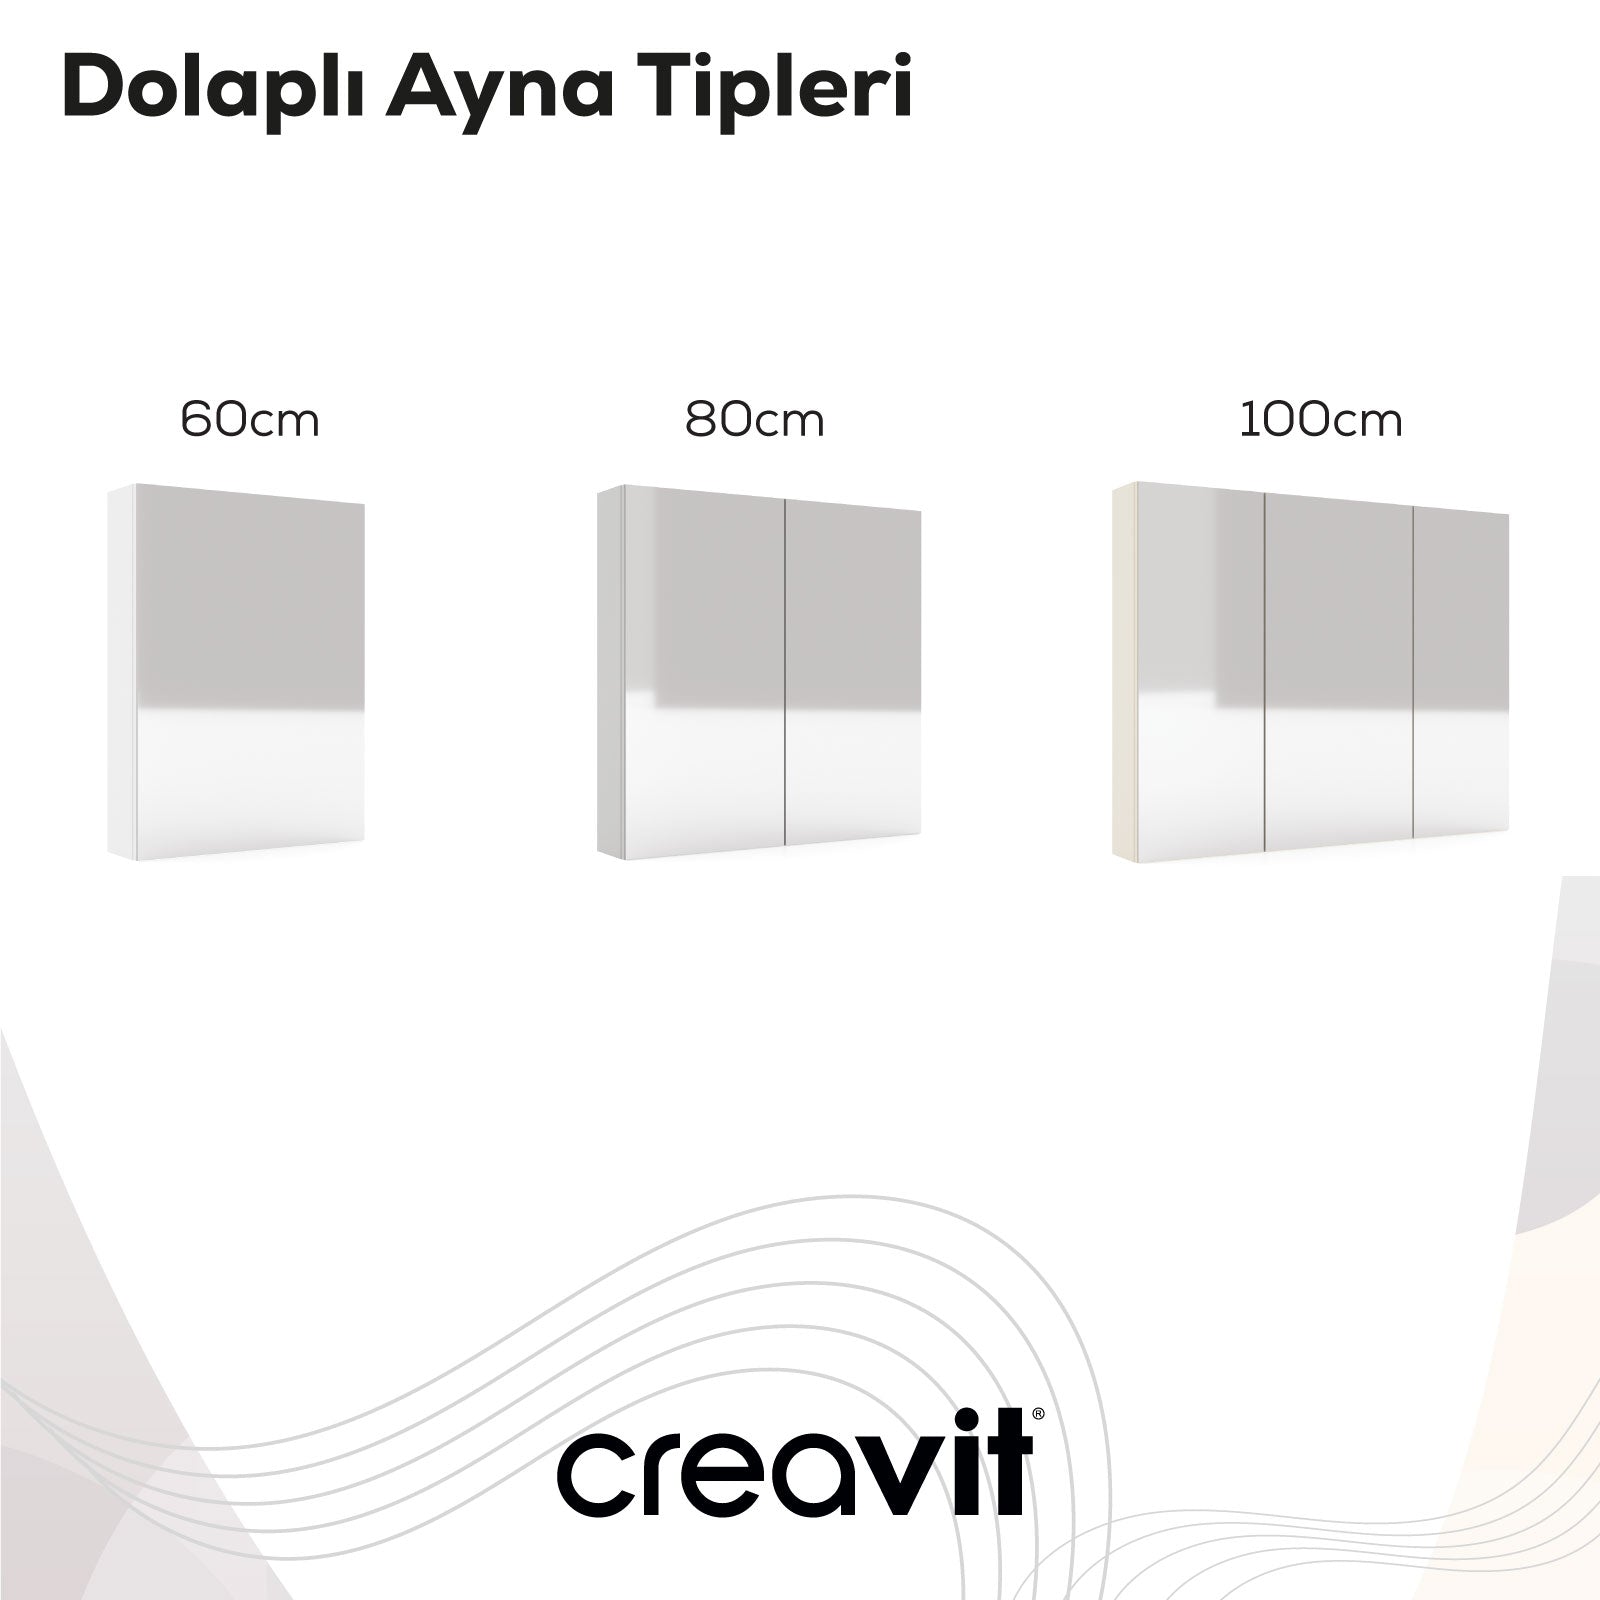 D10 60cm Melamin Aynalı Dolap Beyaz - Creavit | Banyo Bu Tarafta